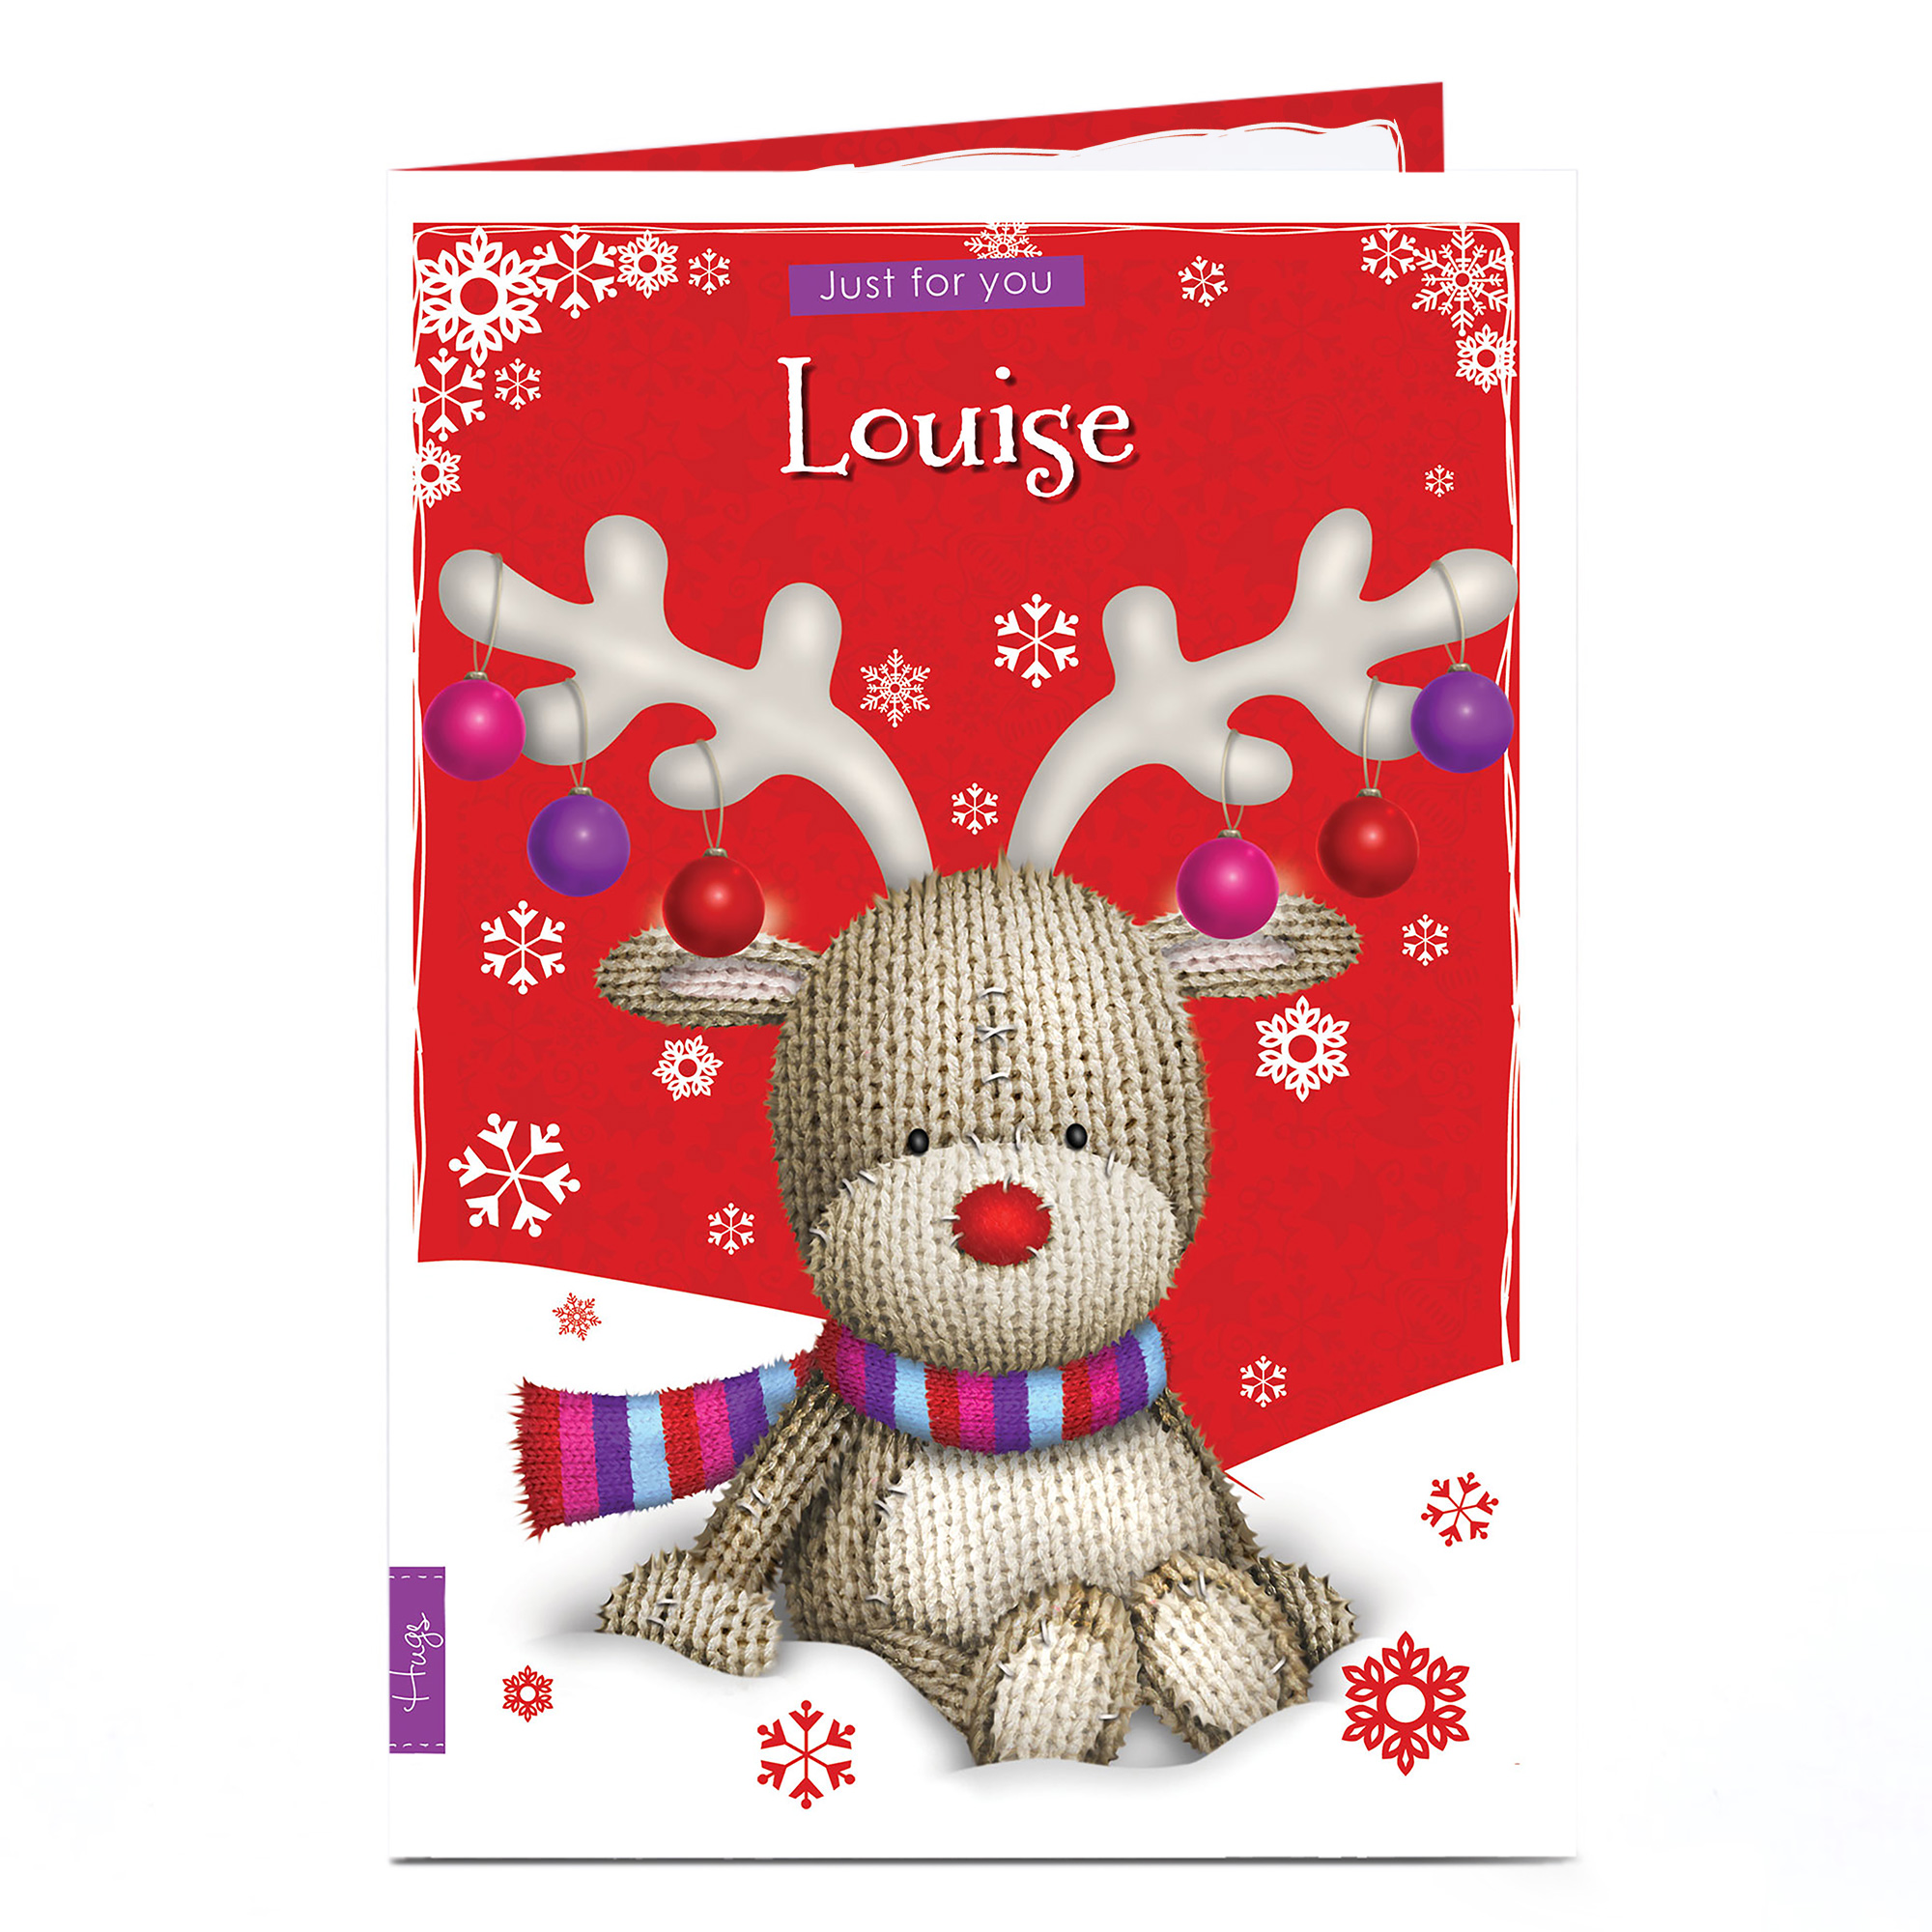 Personalised Hugs Bear Christmas Card - Reindeer